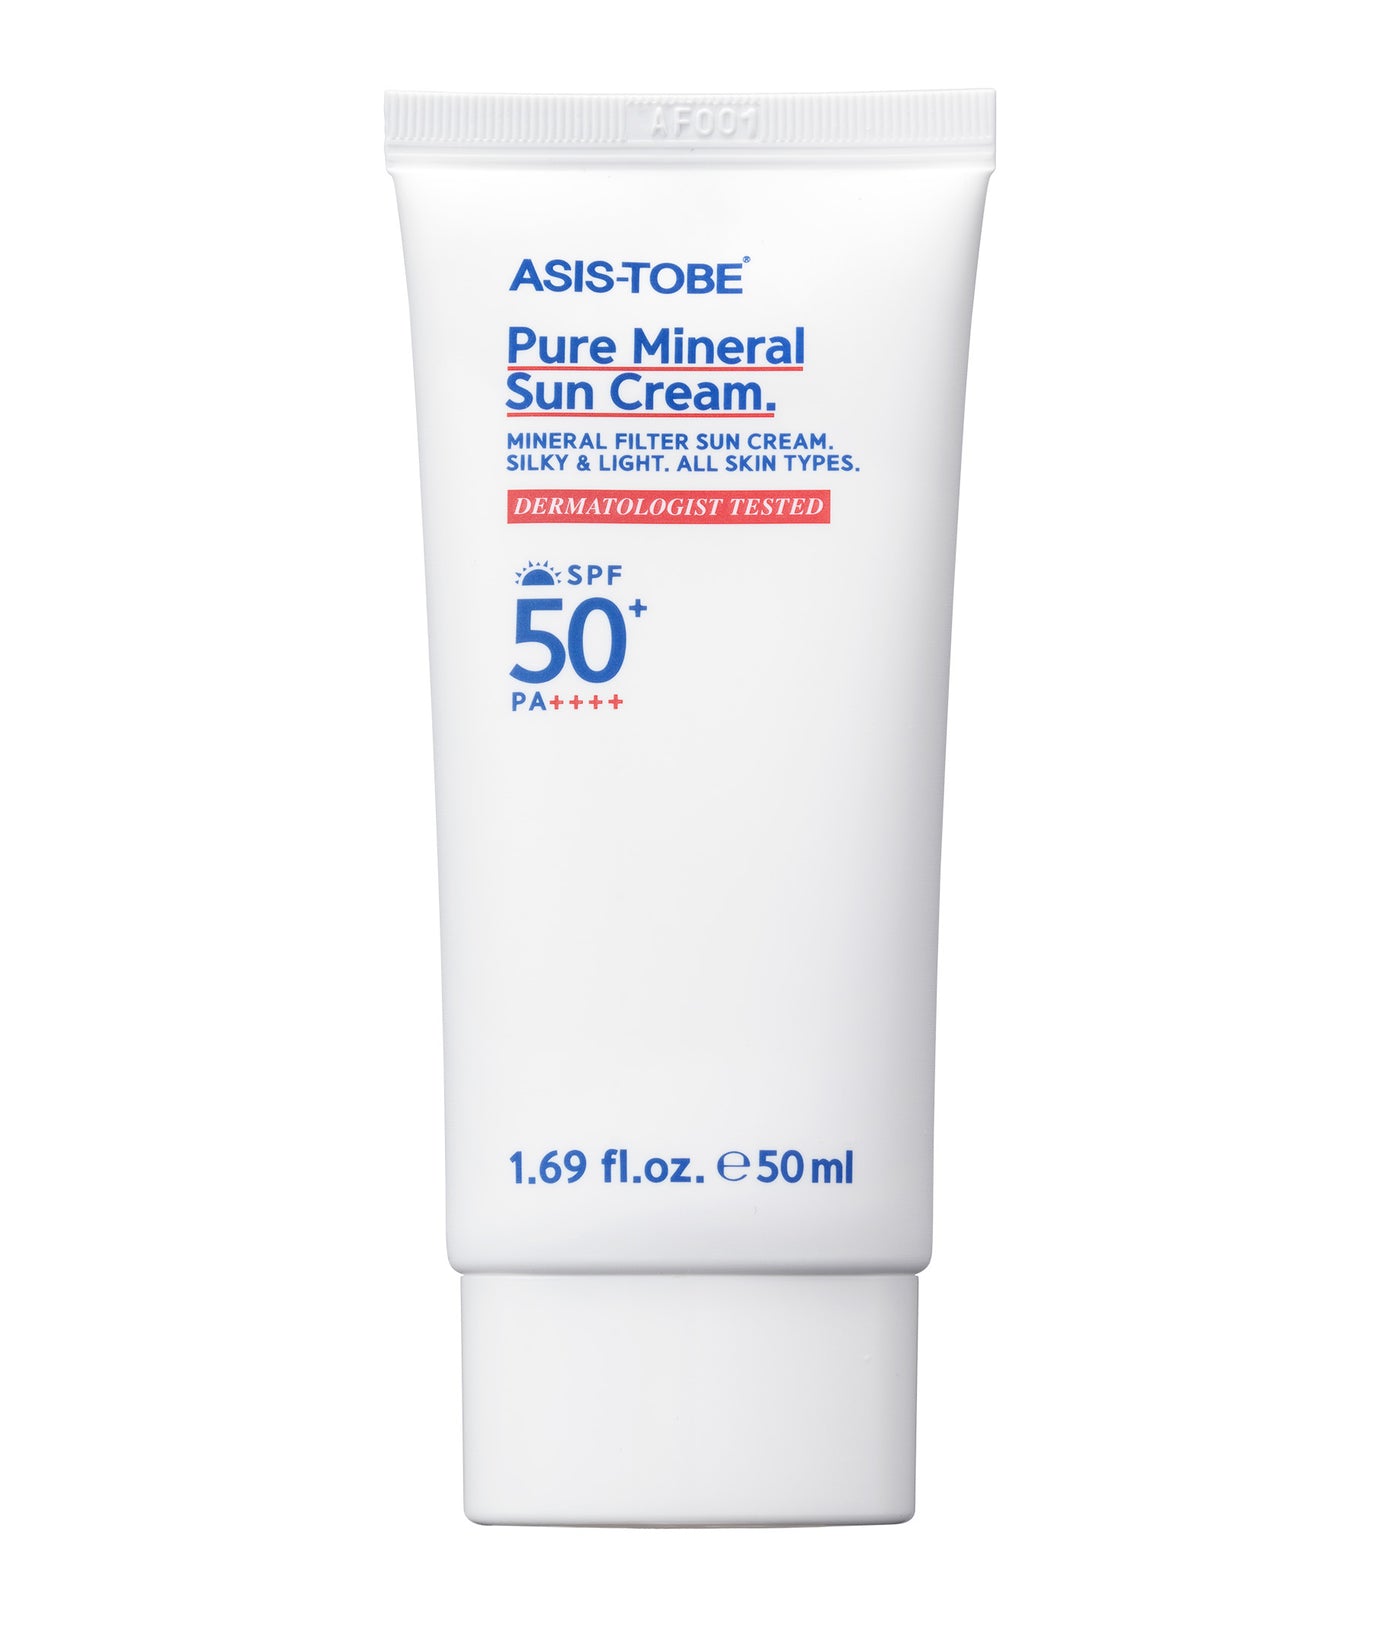 ASIS TOBE Pure Mineral Sun Cream SPF 50+ PA++++